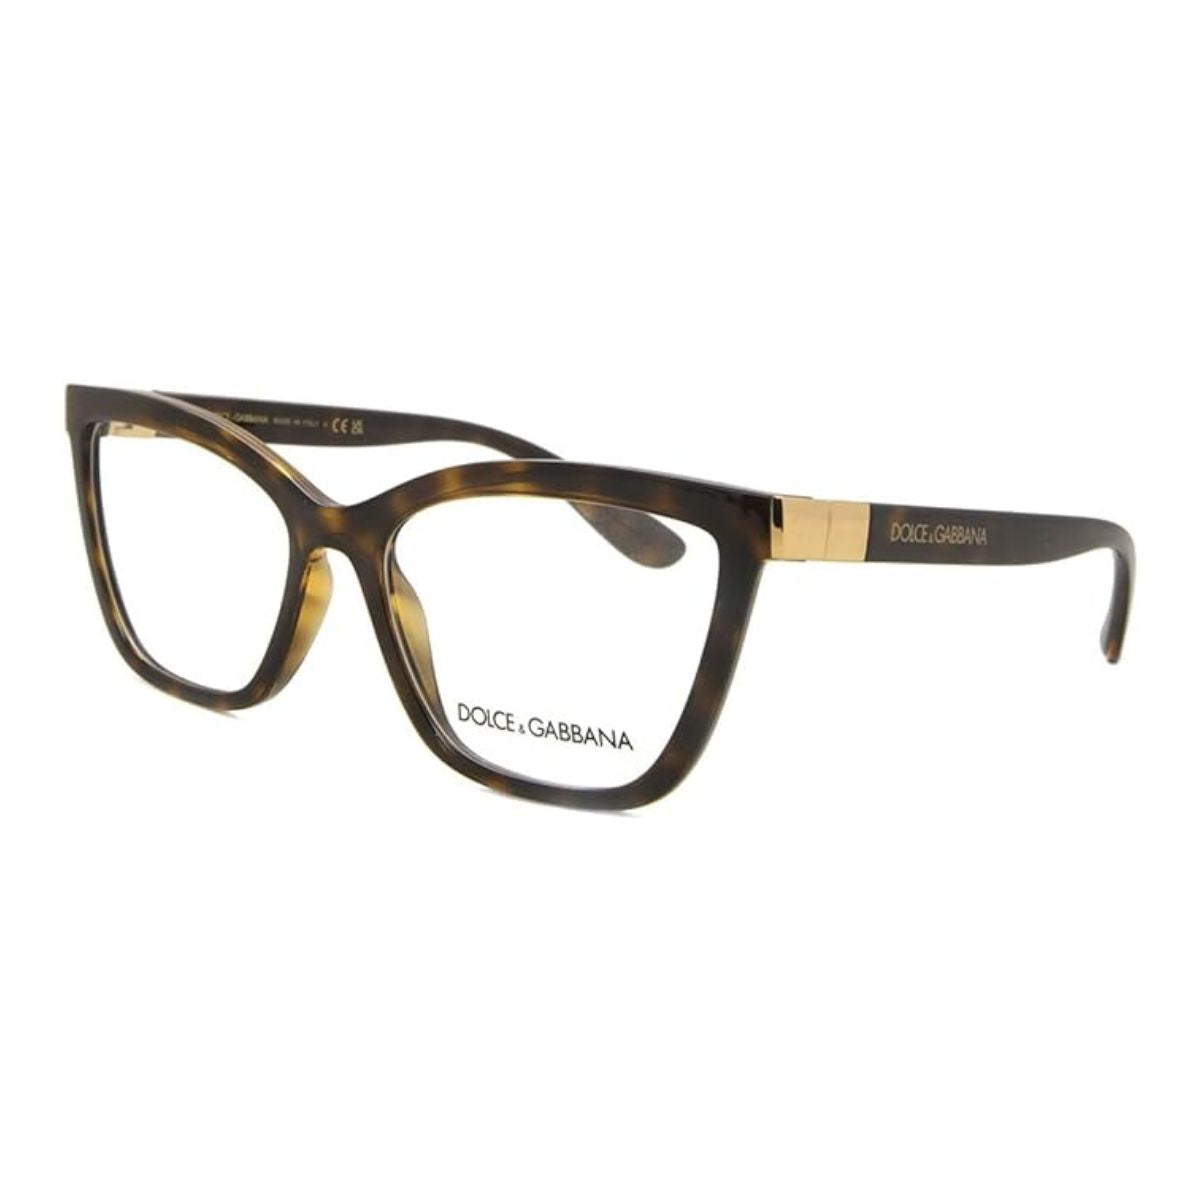 "Dolce & Gabbana 5076 502 Cat Eye Glasses Frame For Women's At Optorium"